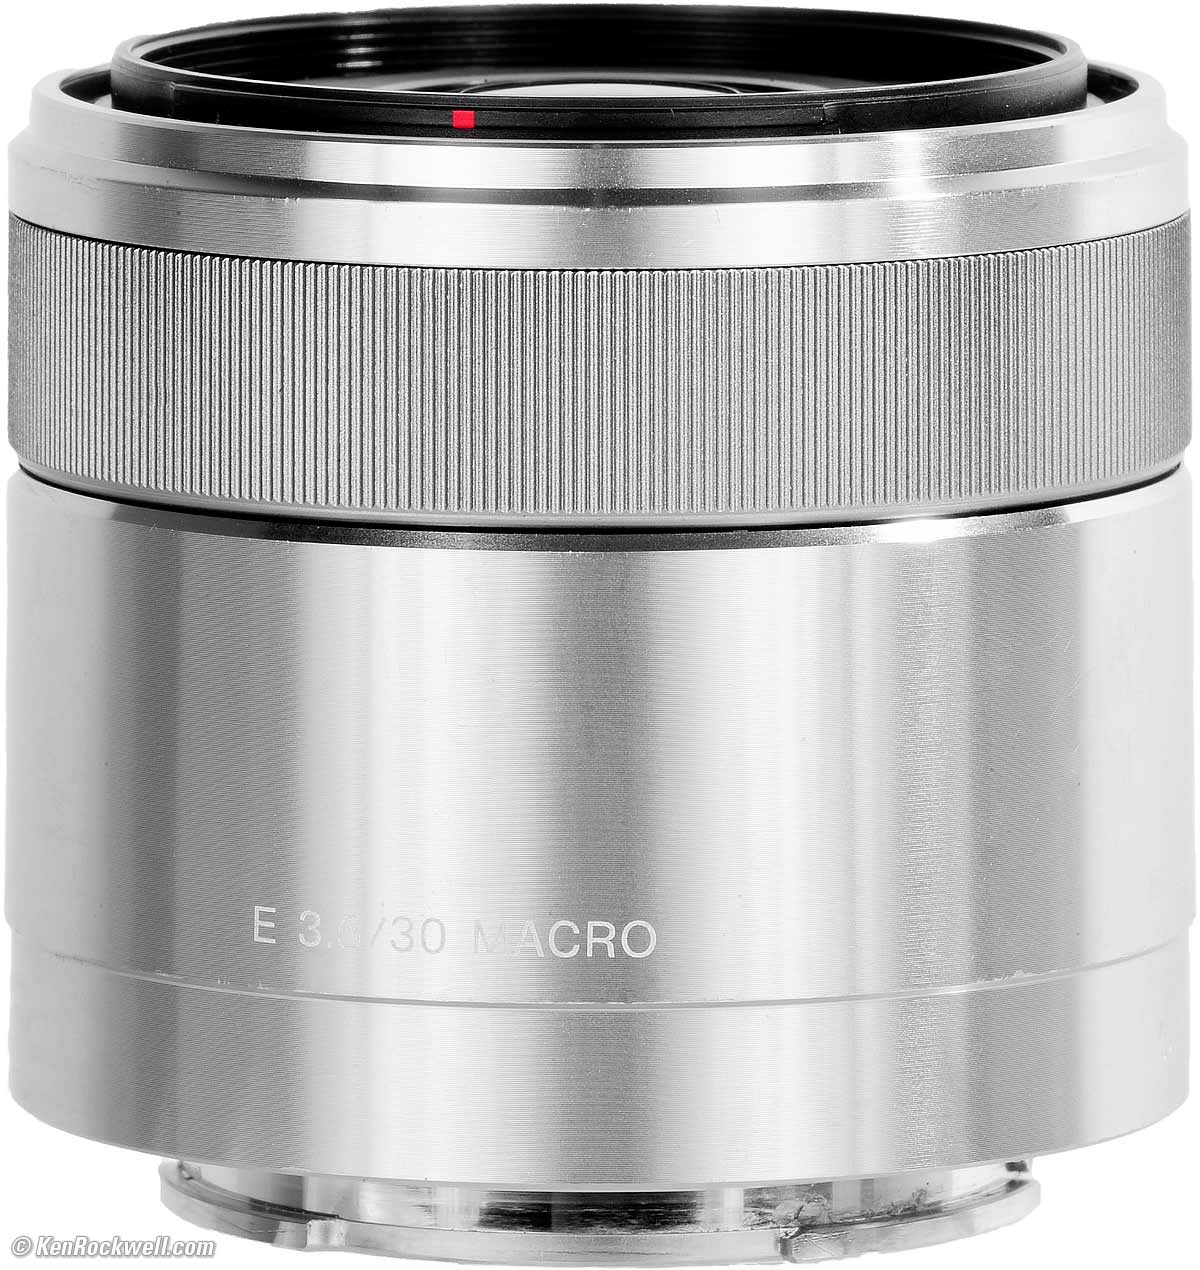 カメラ レンズ(単焦点) Sony 30mm f/3.5 Macro Review